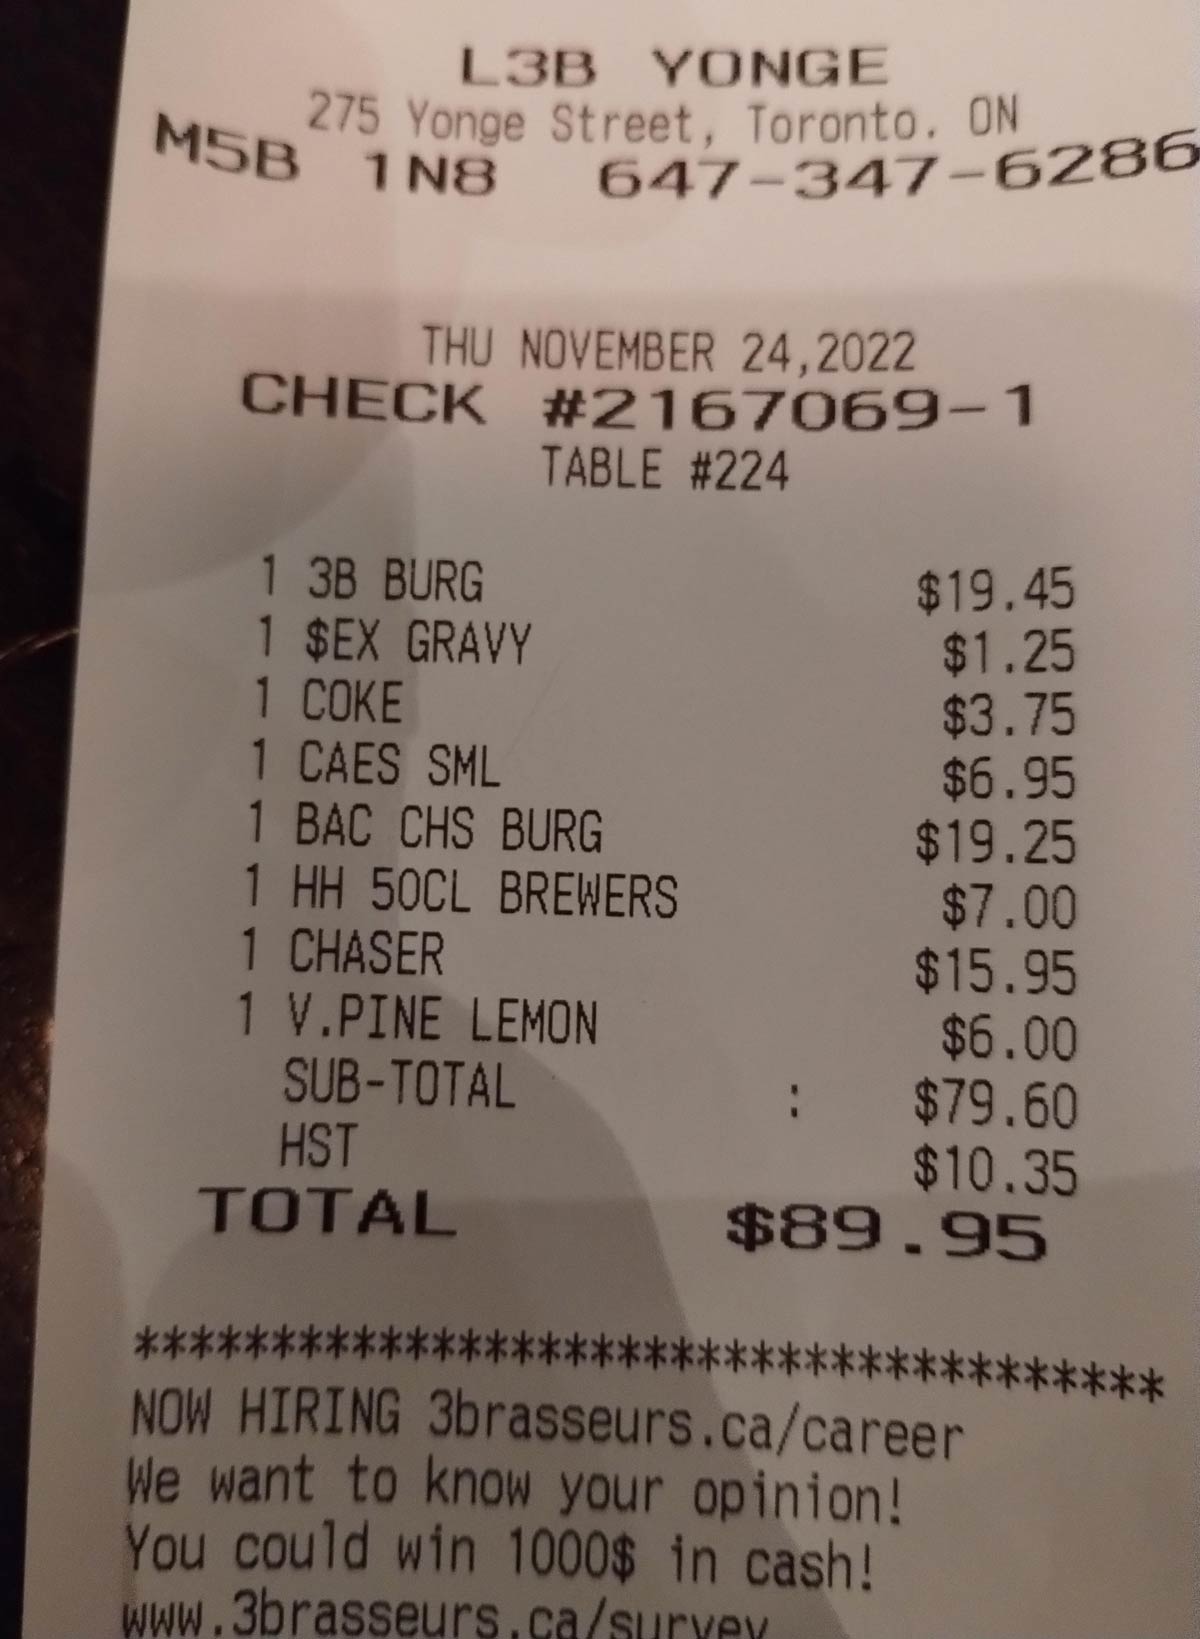 Only $1.25 for Sex Gravy!